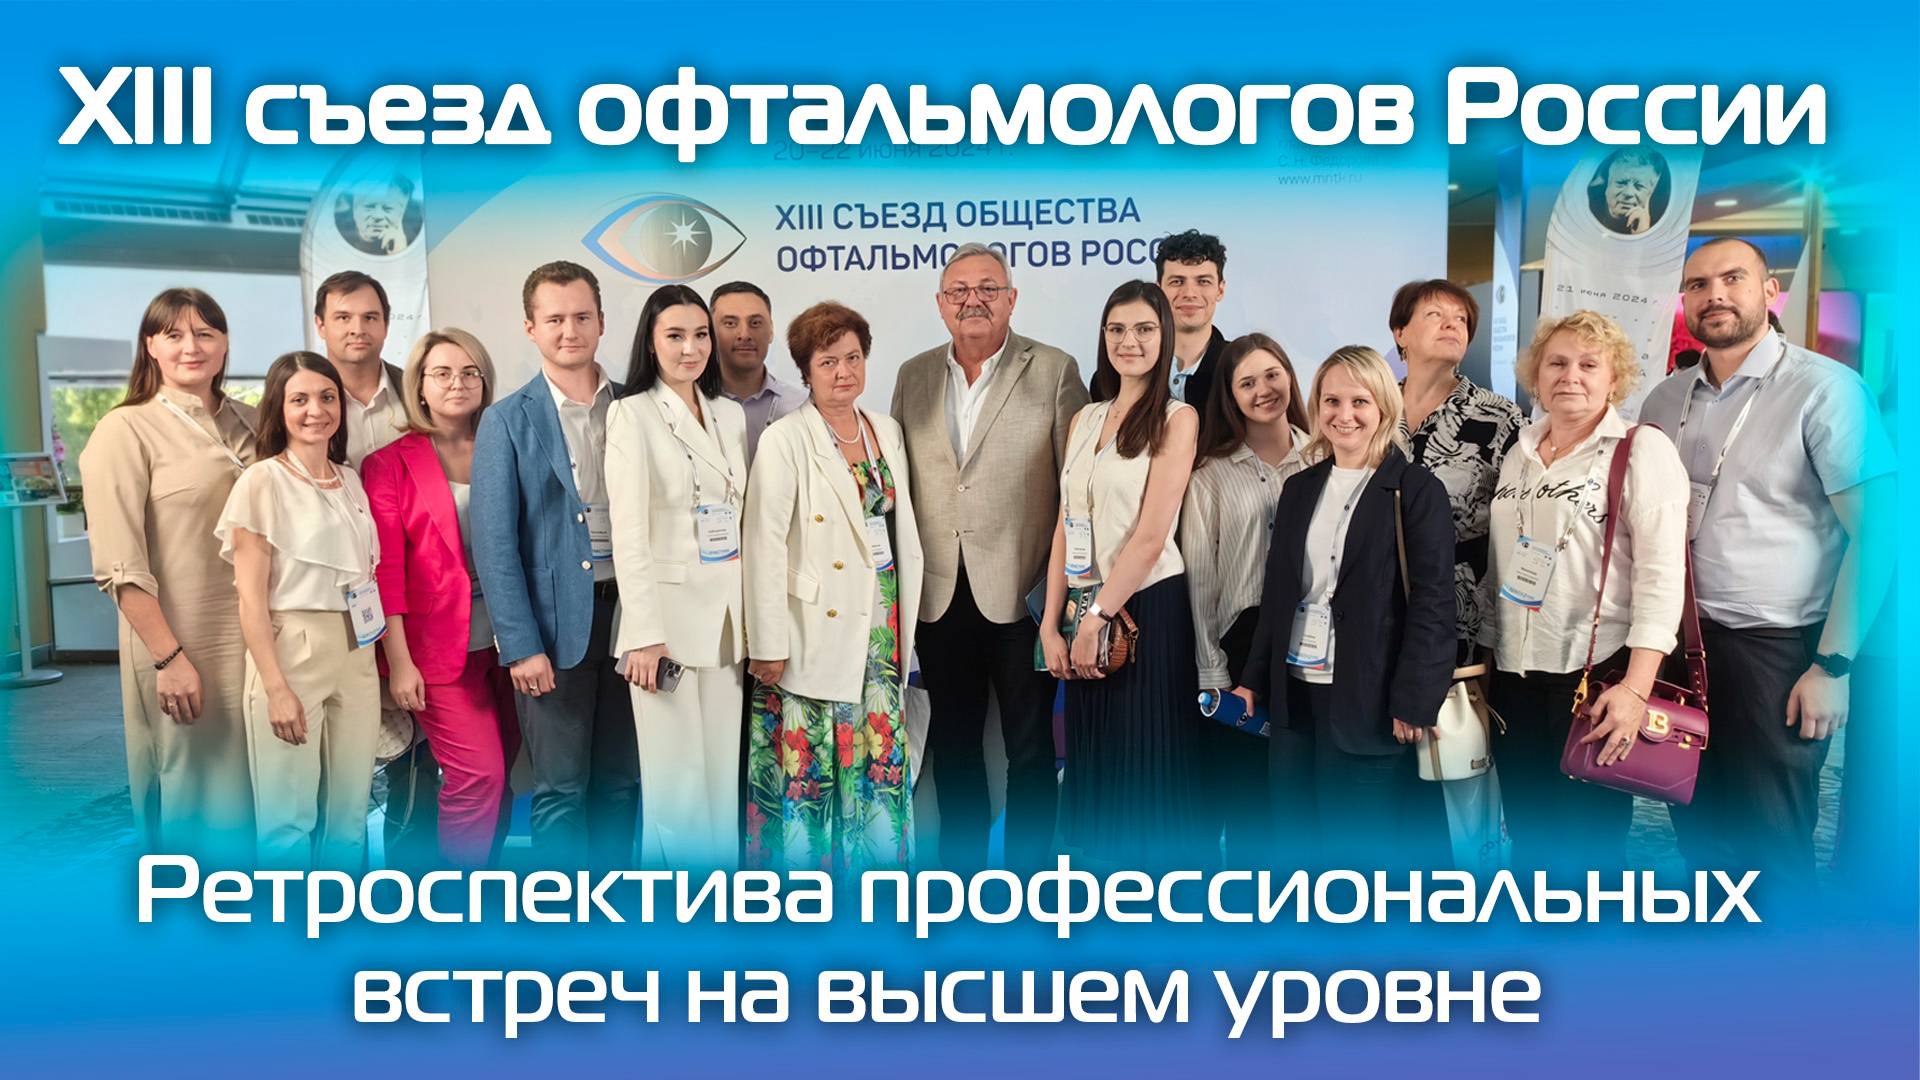 XIII съезд офтальмологов России. Ретроспектива профессиональных встреч на высшем уровне